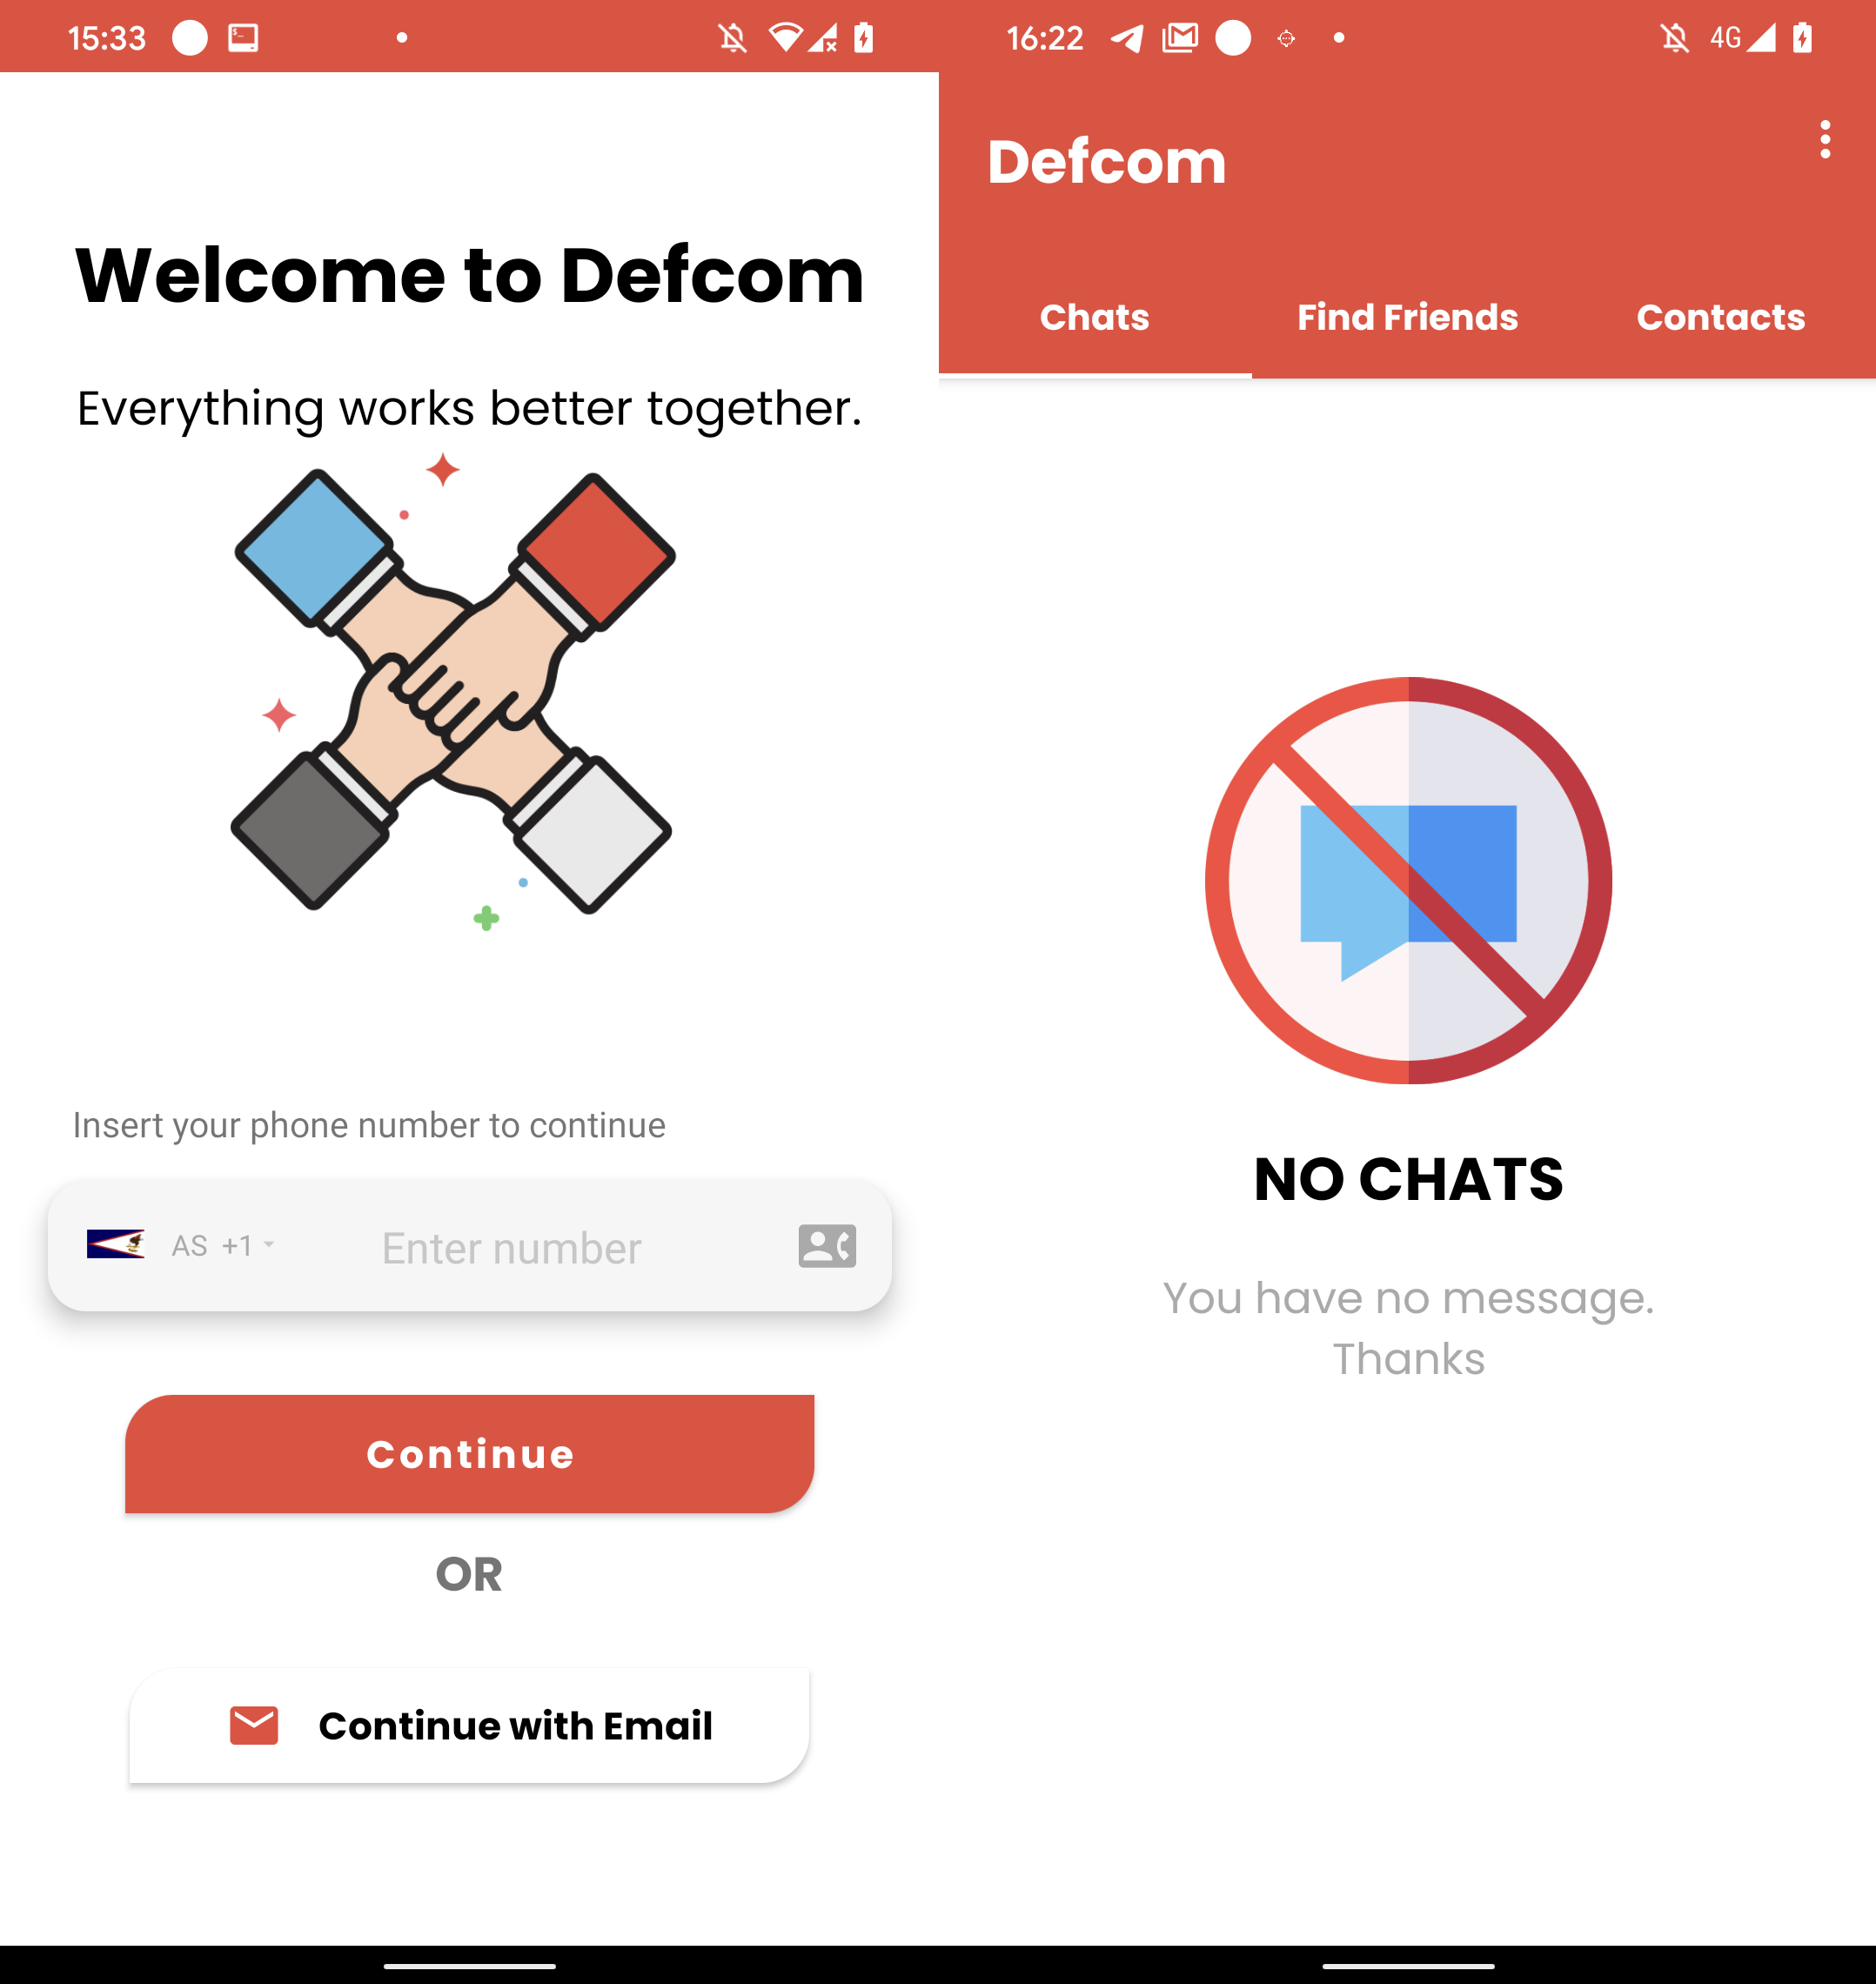 Εικόνα 11. Διεπαφή σύνδεσης Defcom (αριστερά) και καρτέλες εντός εφαρμογής (δεξιά)